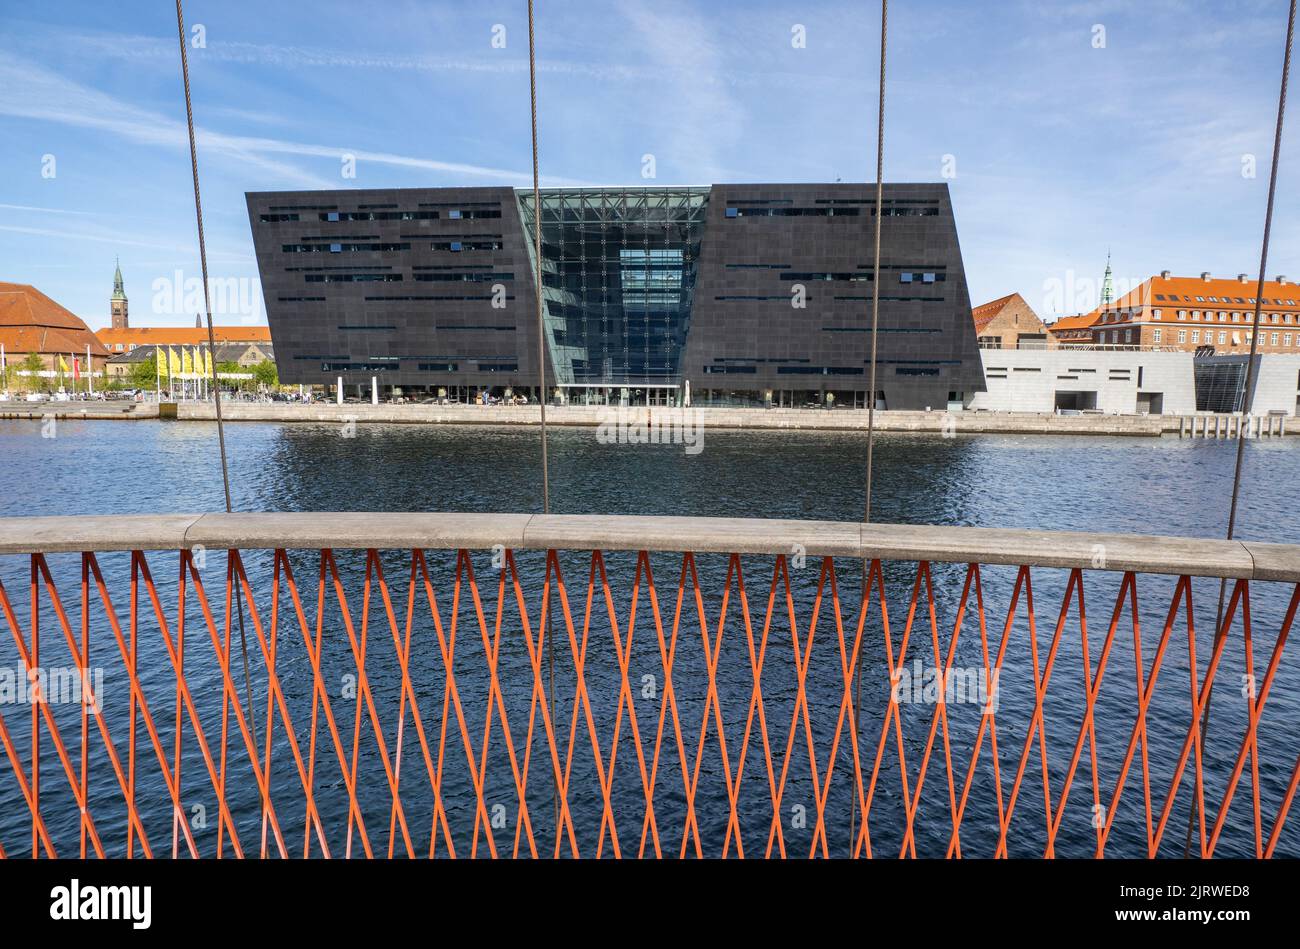 Moderna estensione della Royal Danish Library, affettuosamente conosciuta come Den Sorte Diamant, il Diamante Nero, sul lungomare di Copenhagen, Danimarca Foto Stock